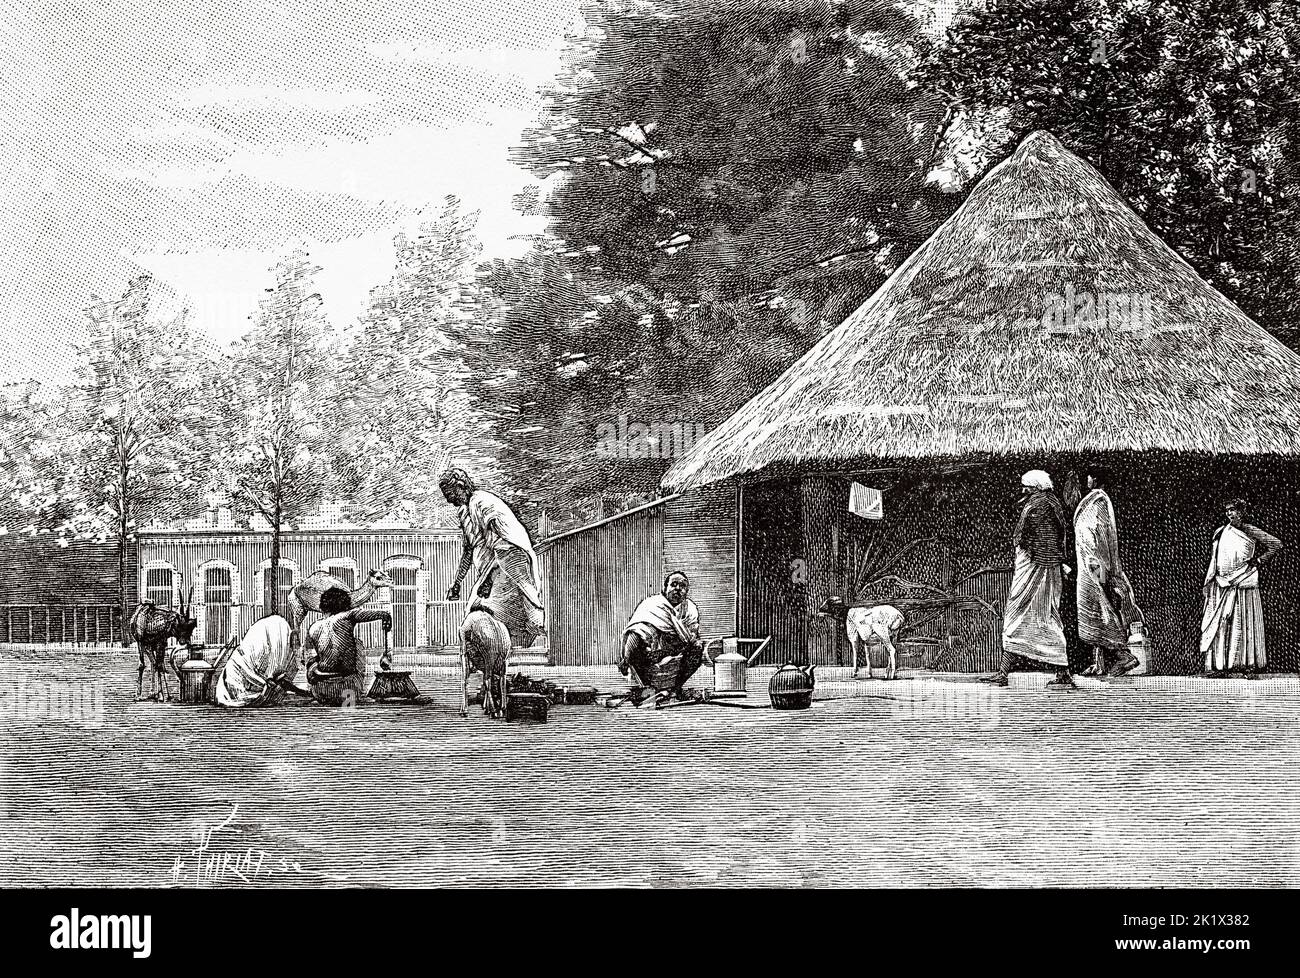 Population somalienne exposée au jardin d'Acclimatation à Paris, France. Ancienne illustration gravée du 19th siècle de la nature 1890 Banque D'Images